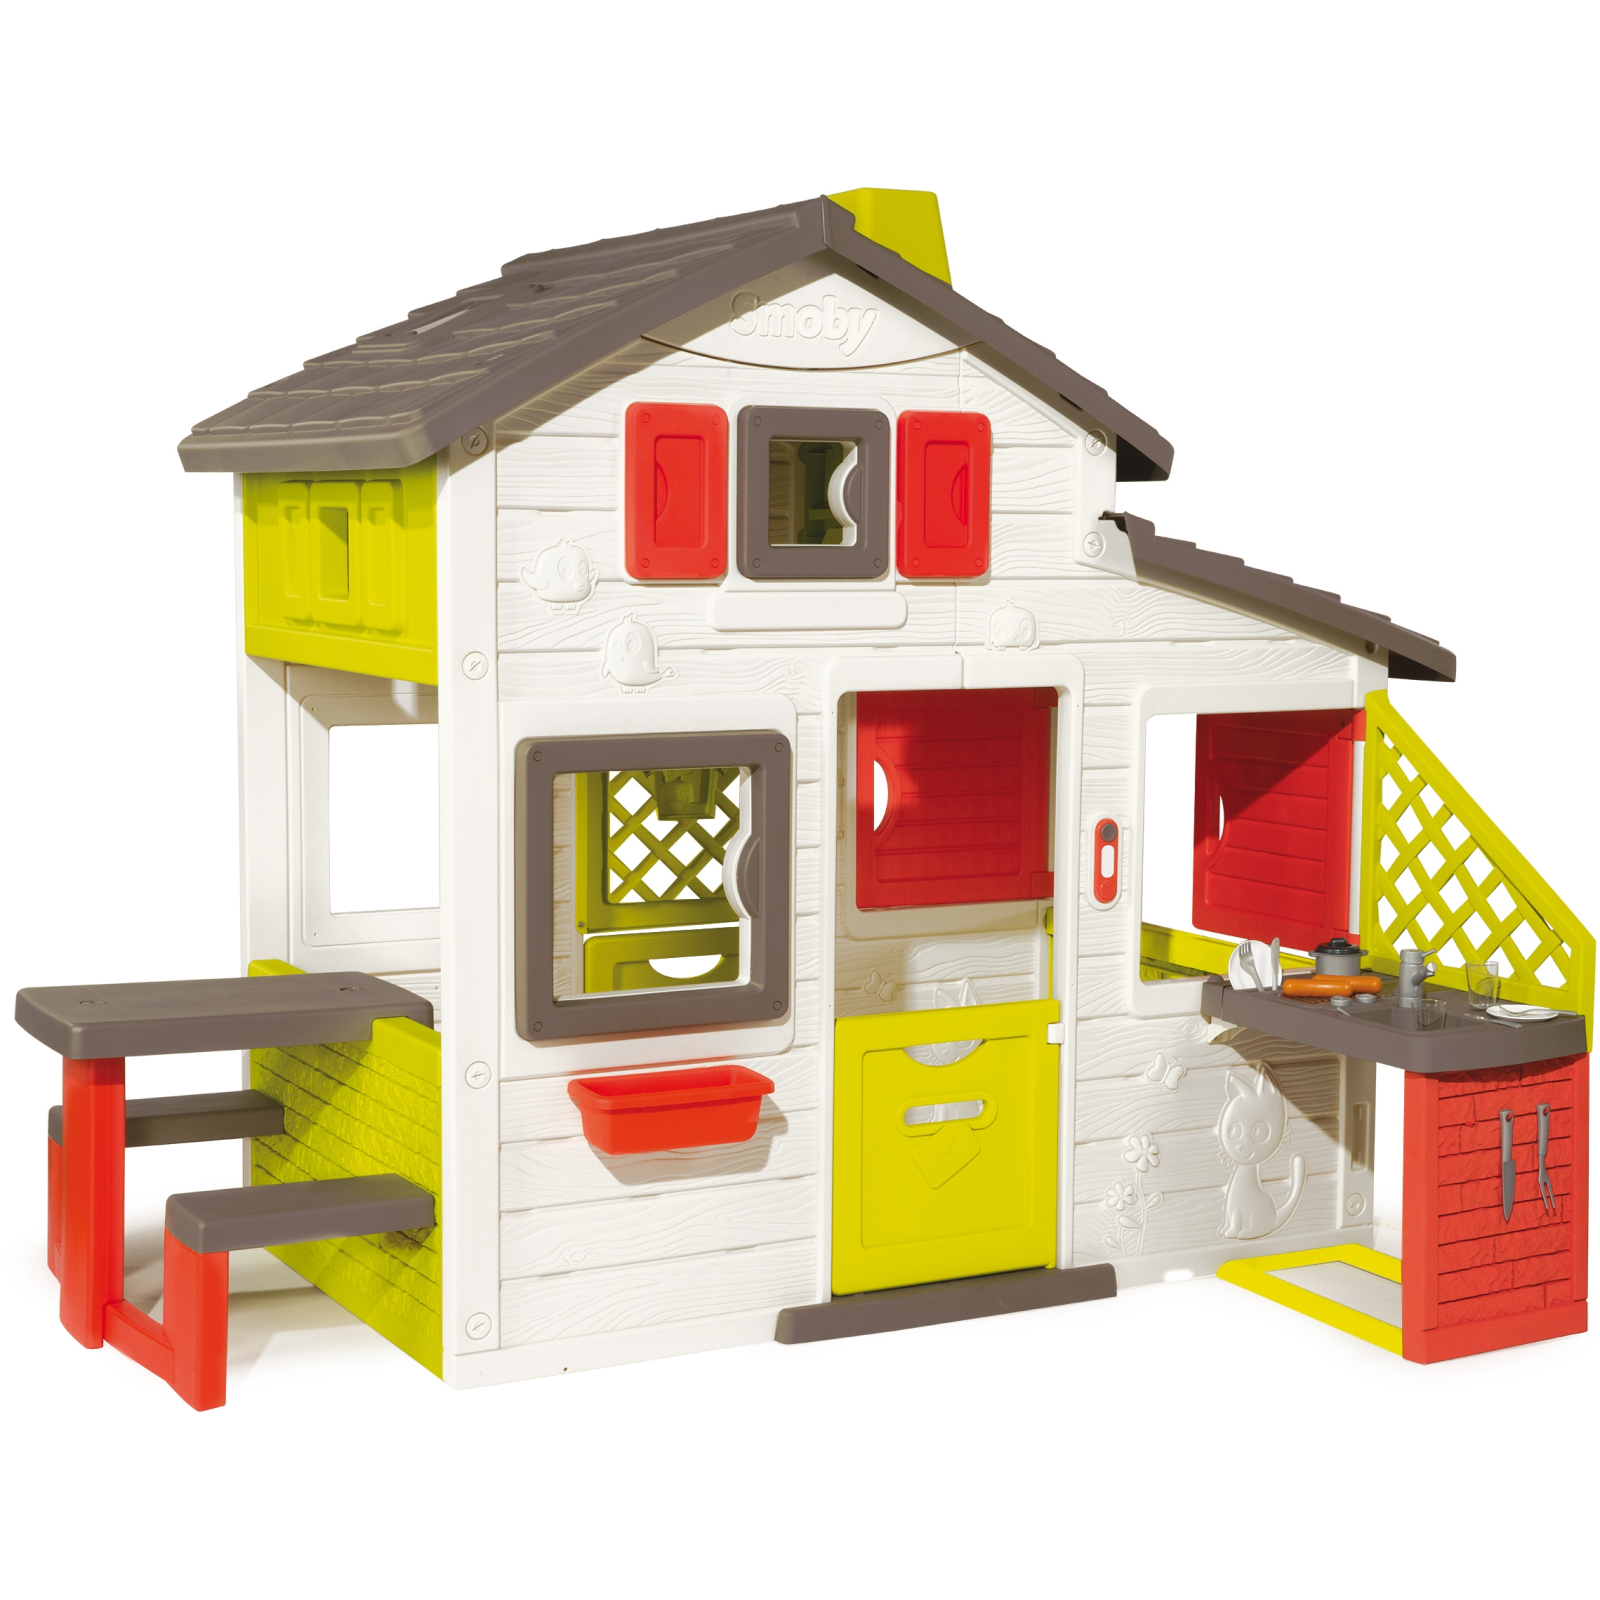 Игровой домик Smoby Дом для друзей с чердаком и летней кухней (810200)